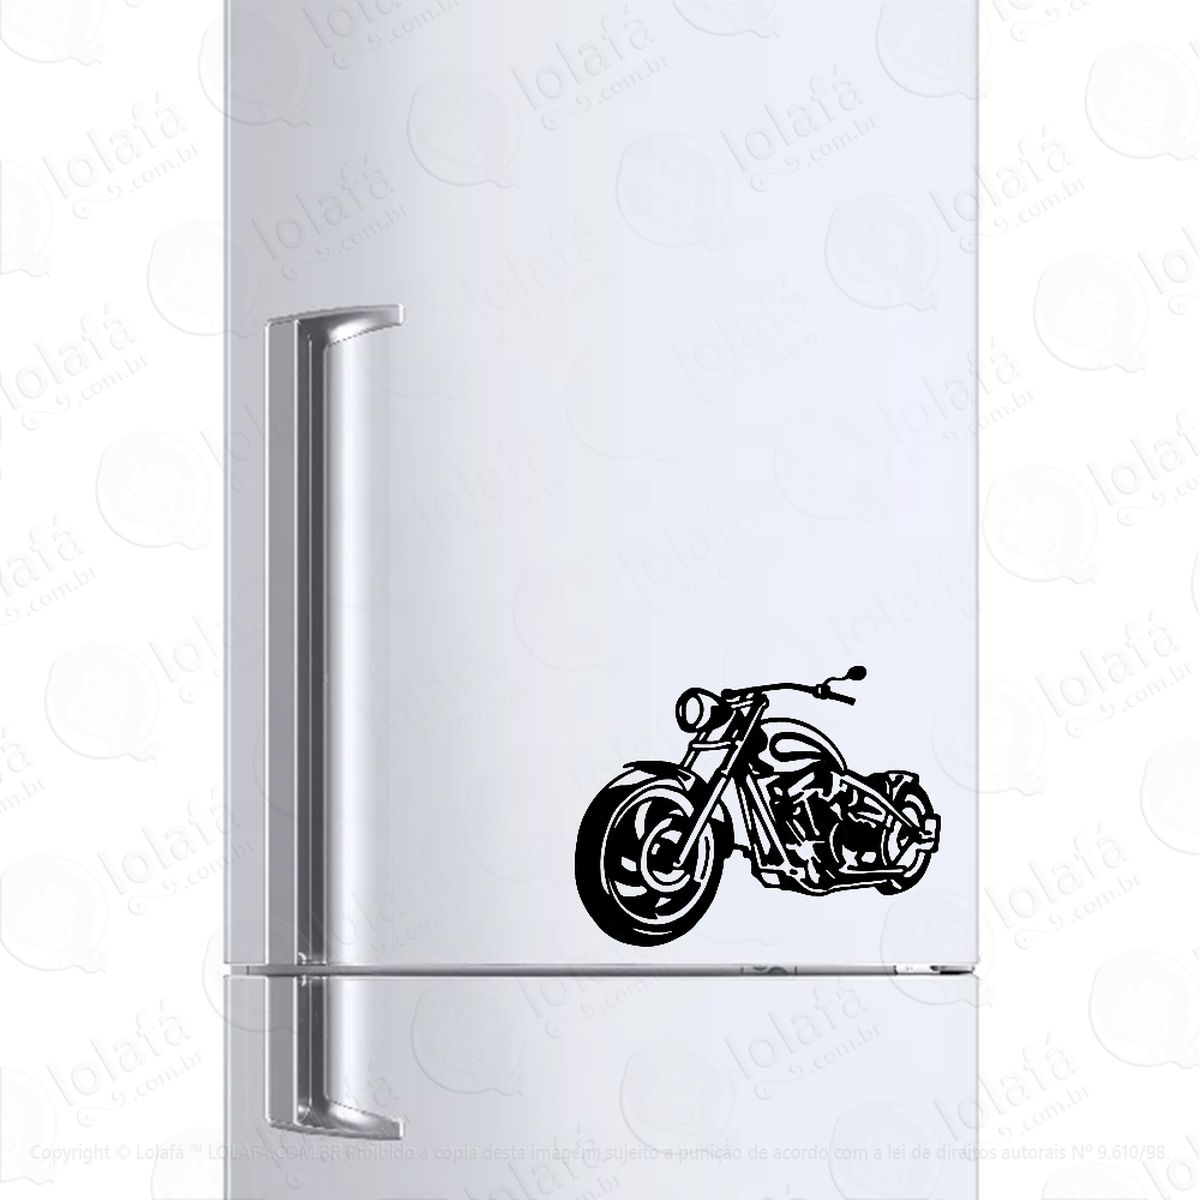 adesivo geladeira frigobar cervejeira moto harley davidson mod:200